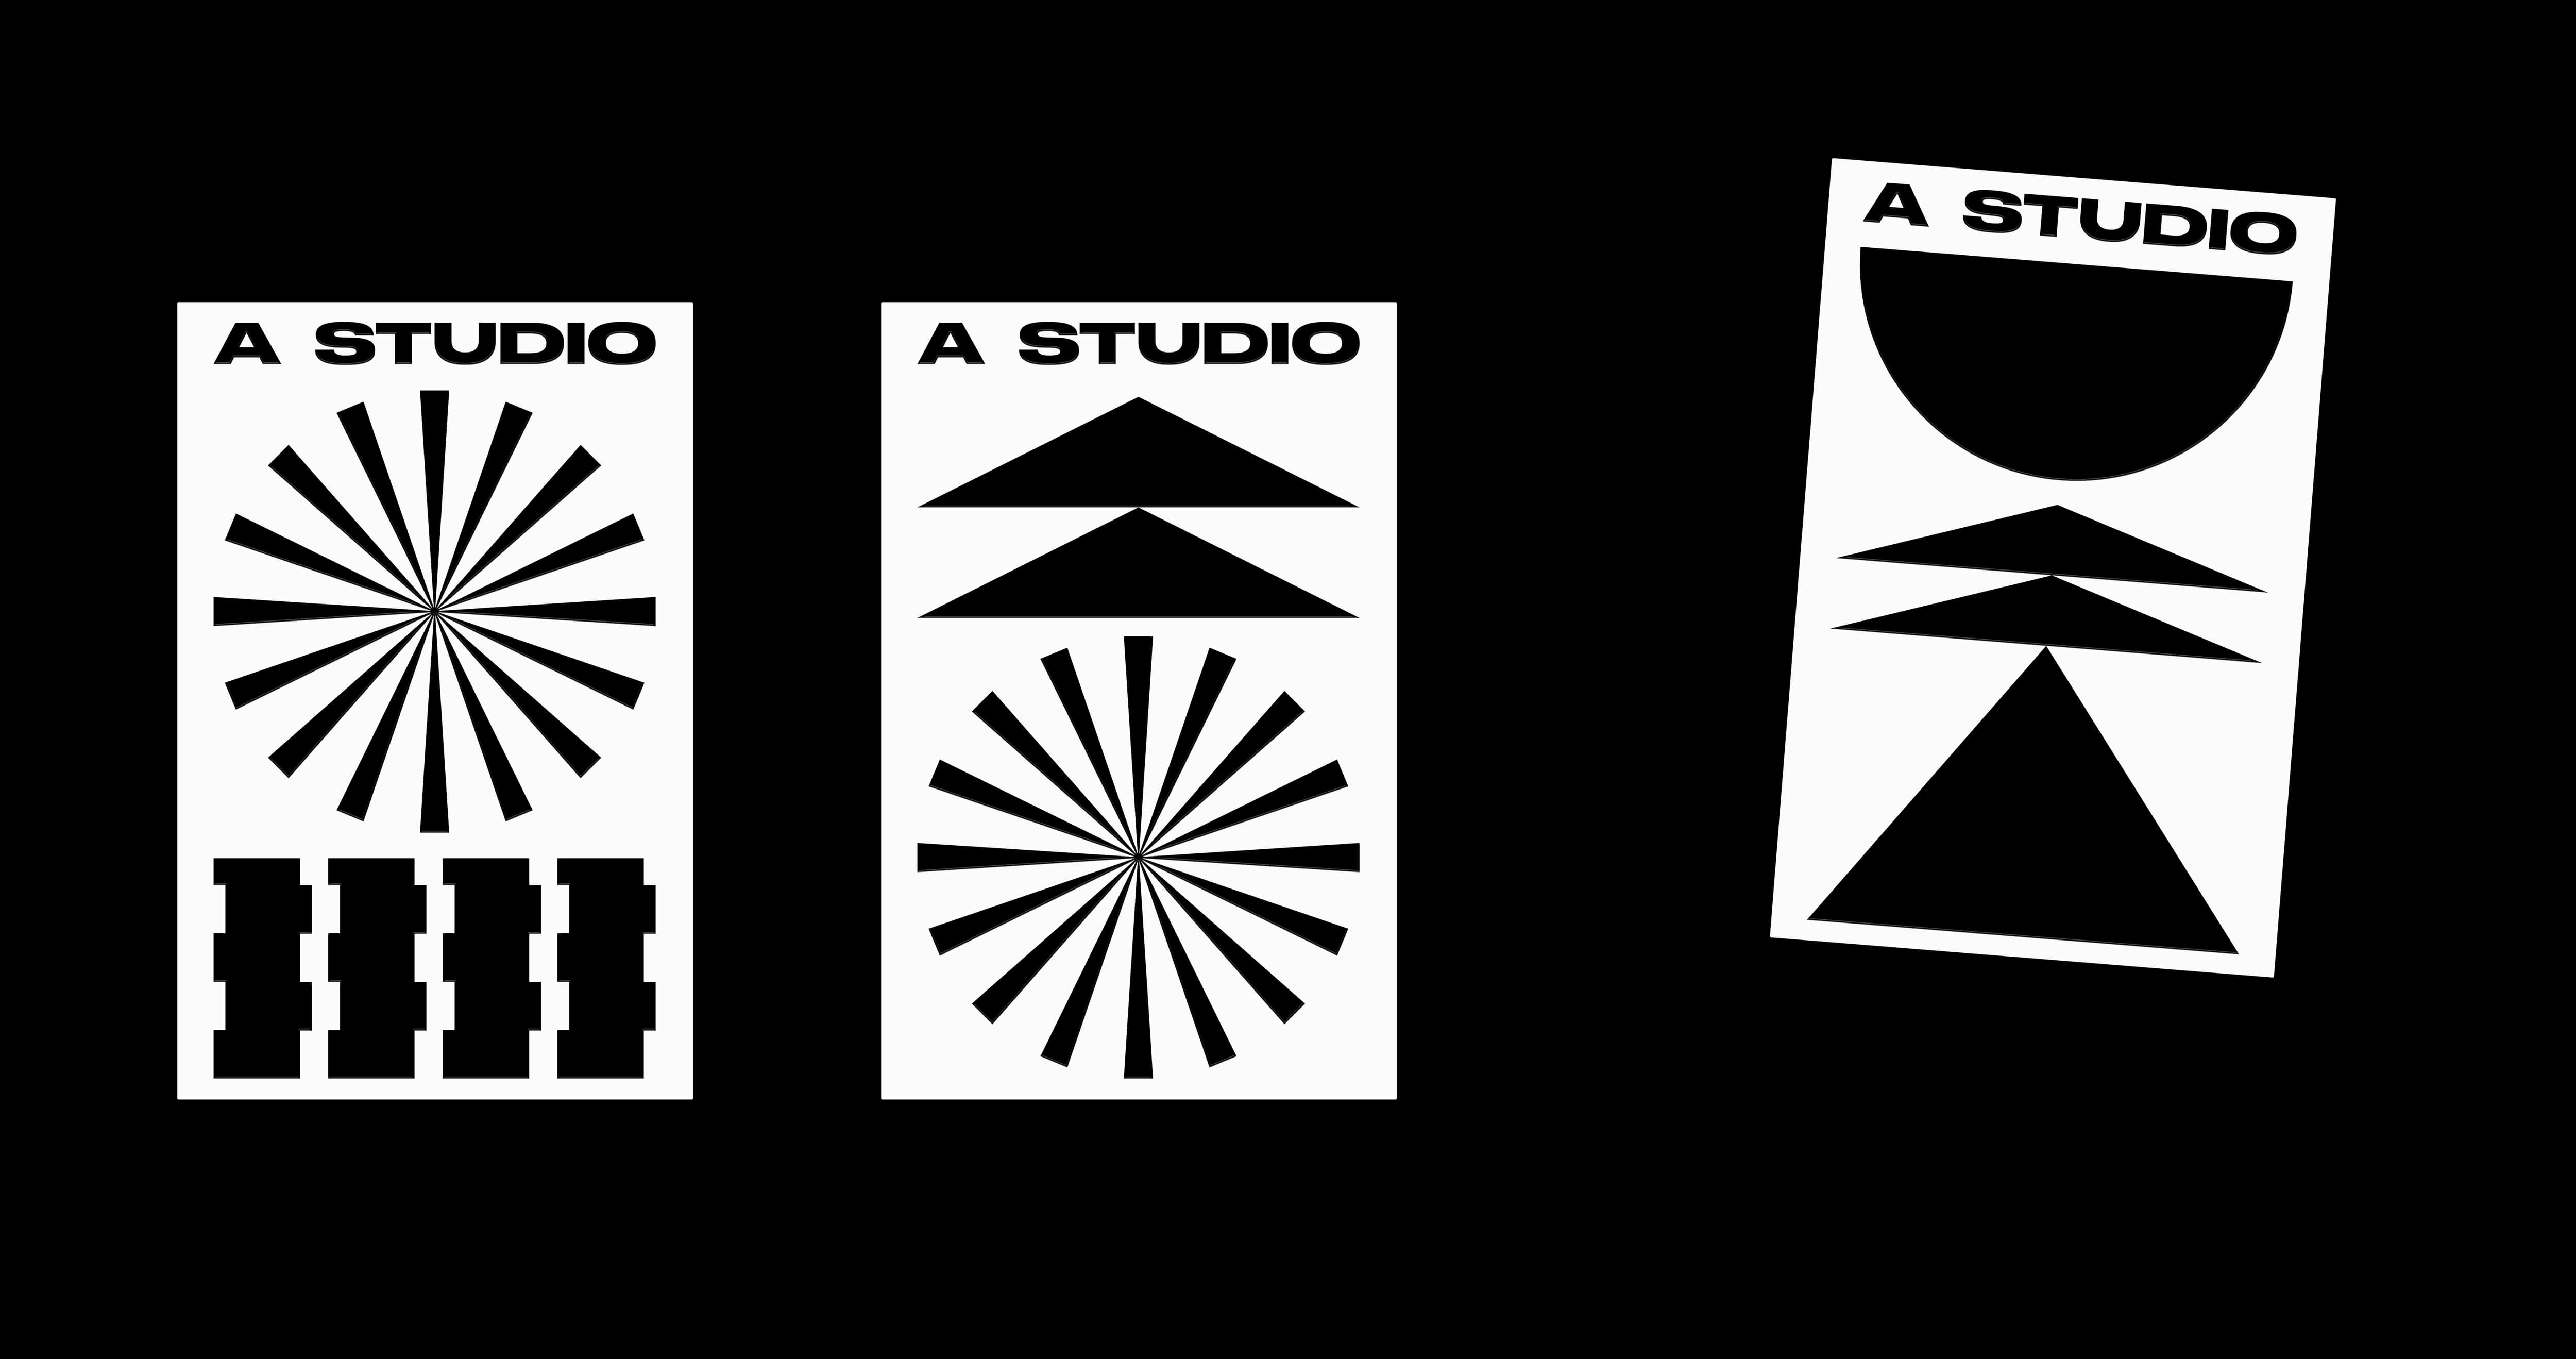 3 Visitenkarten mit piktografischen Visuals / 3 business cards with pictographic visuals